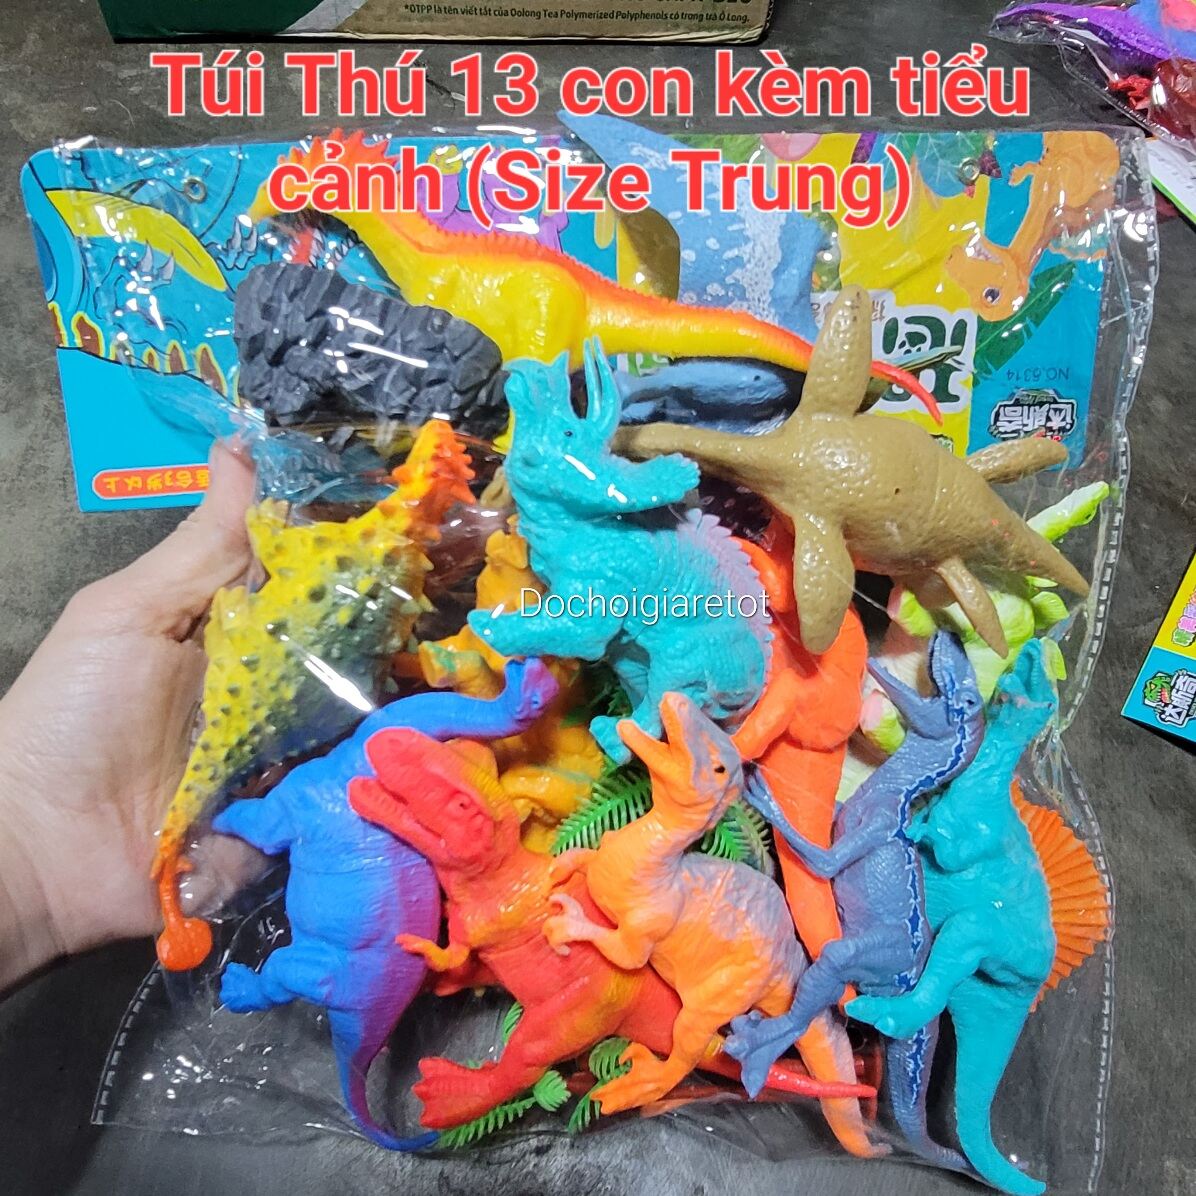 Túi thú đồ chơi khủng long 13 con size trung nhựa dẻo